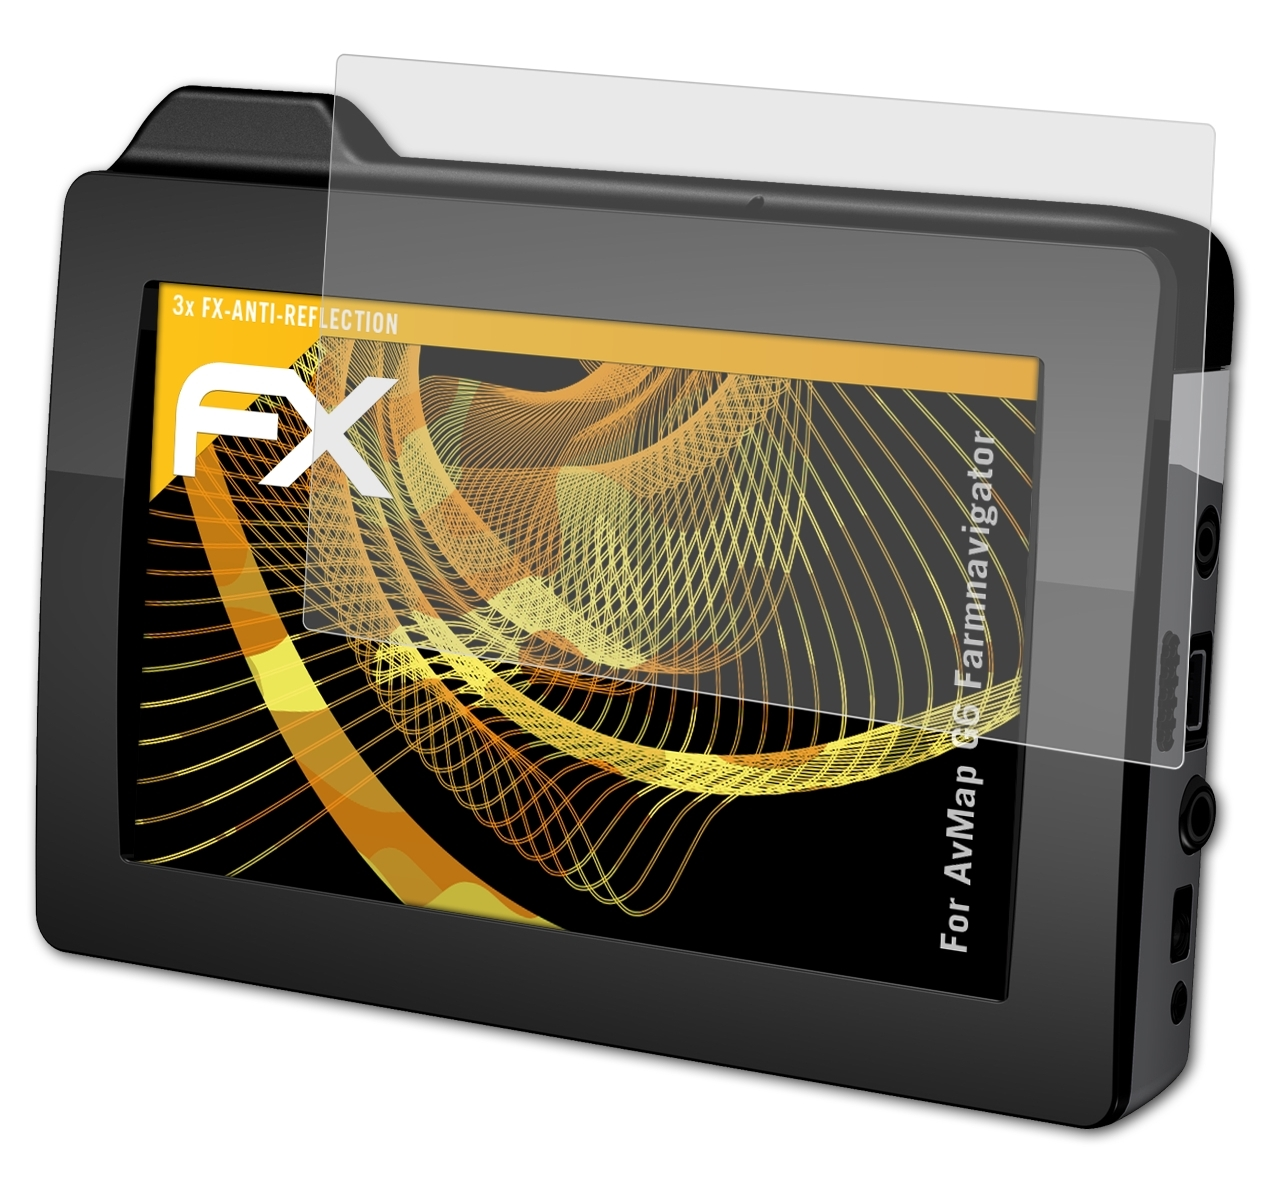 G6 FX-Antireflex AvMap Displayschutz(für ATFOLIX 3x Farmnavigator)